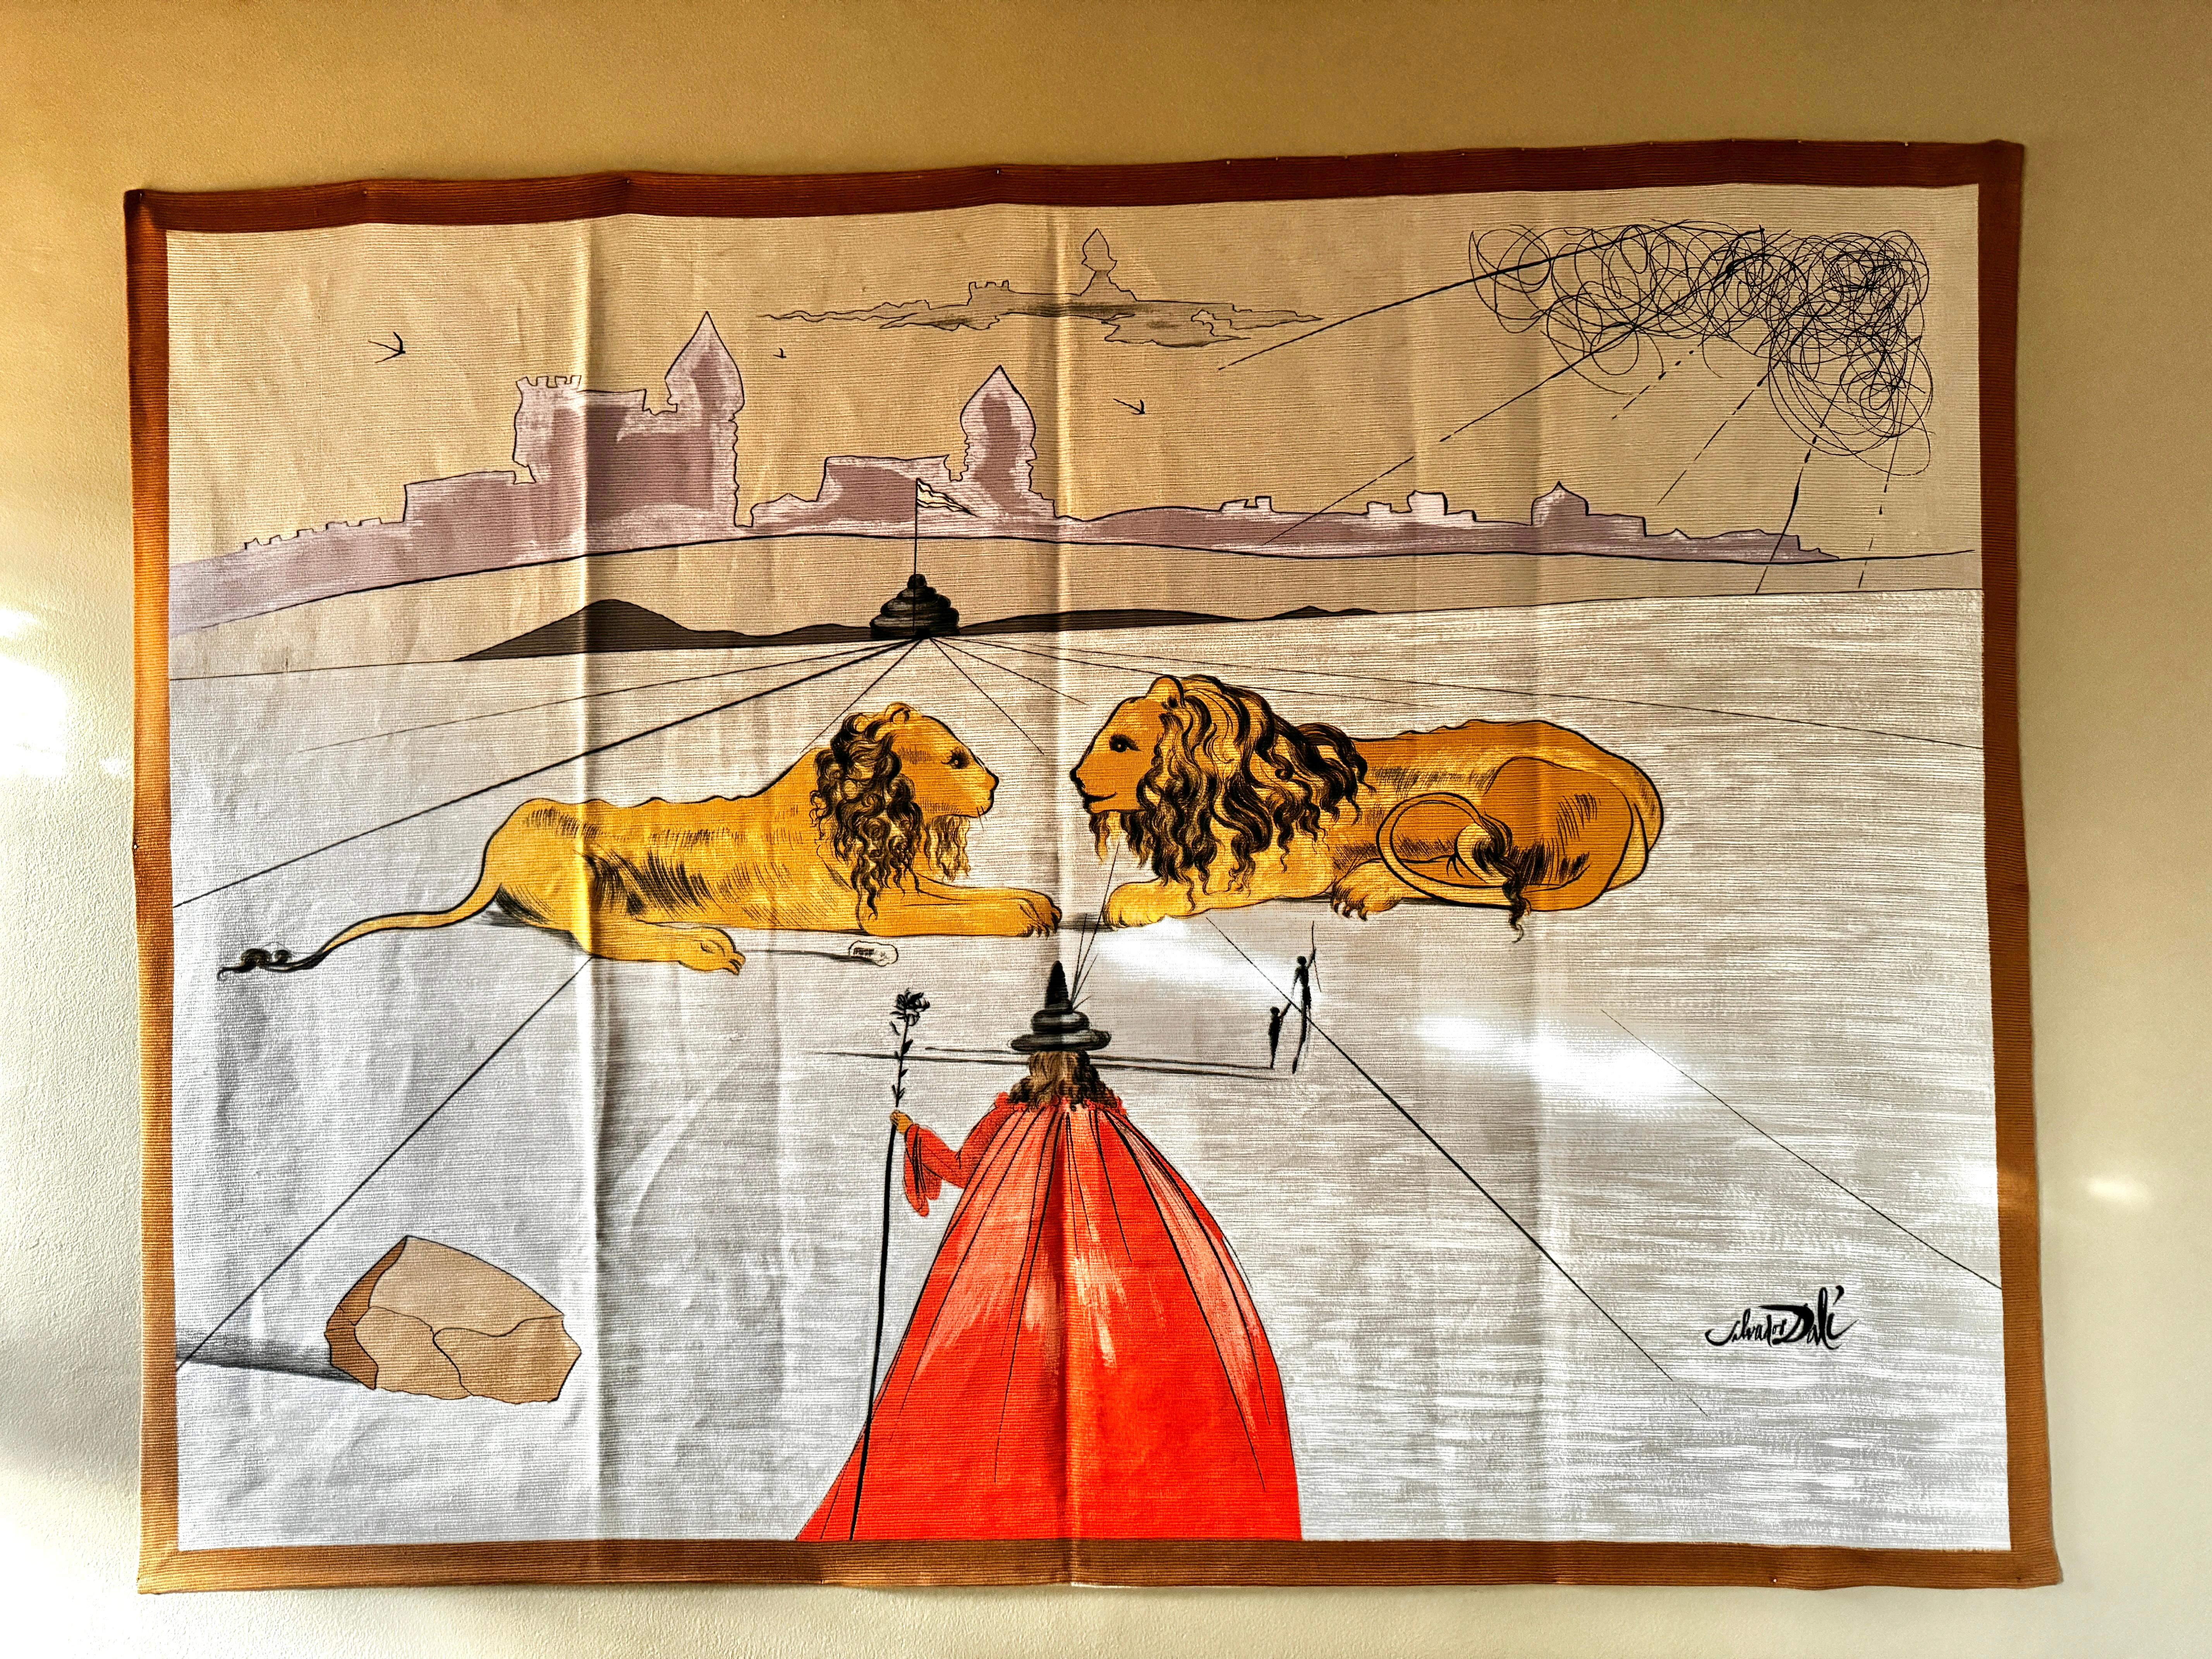 Spanish Salvador Dalí Tapestry 